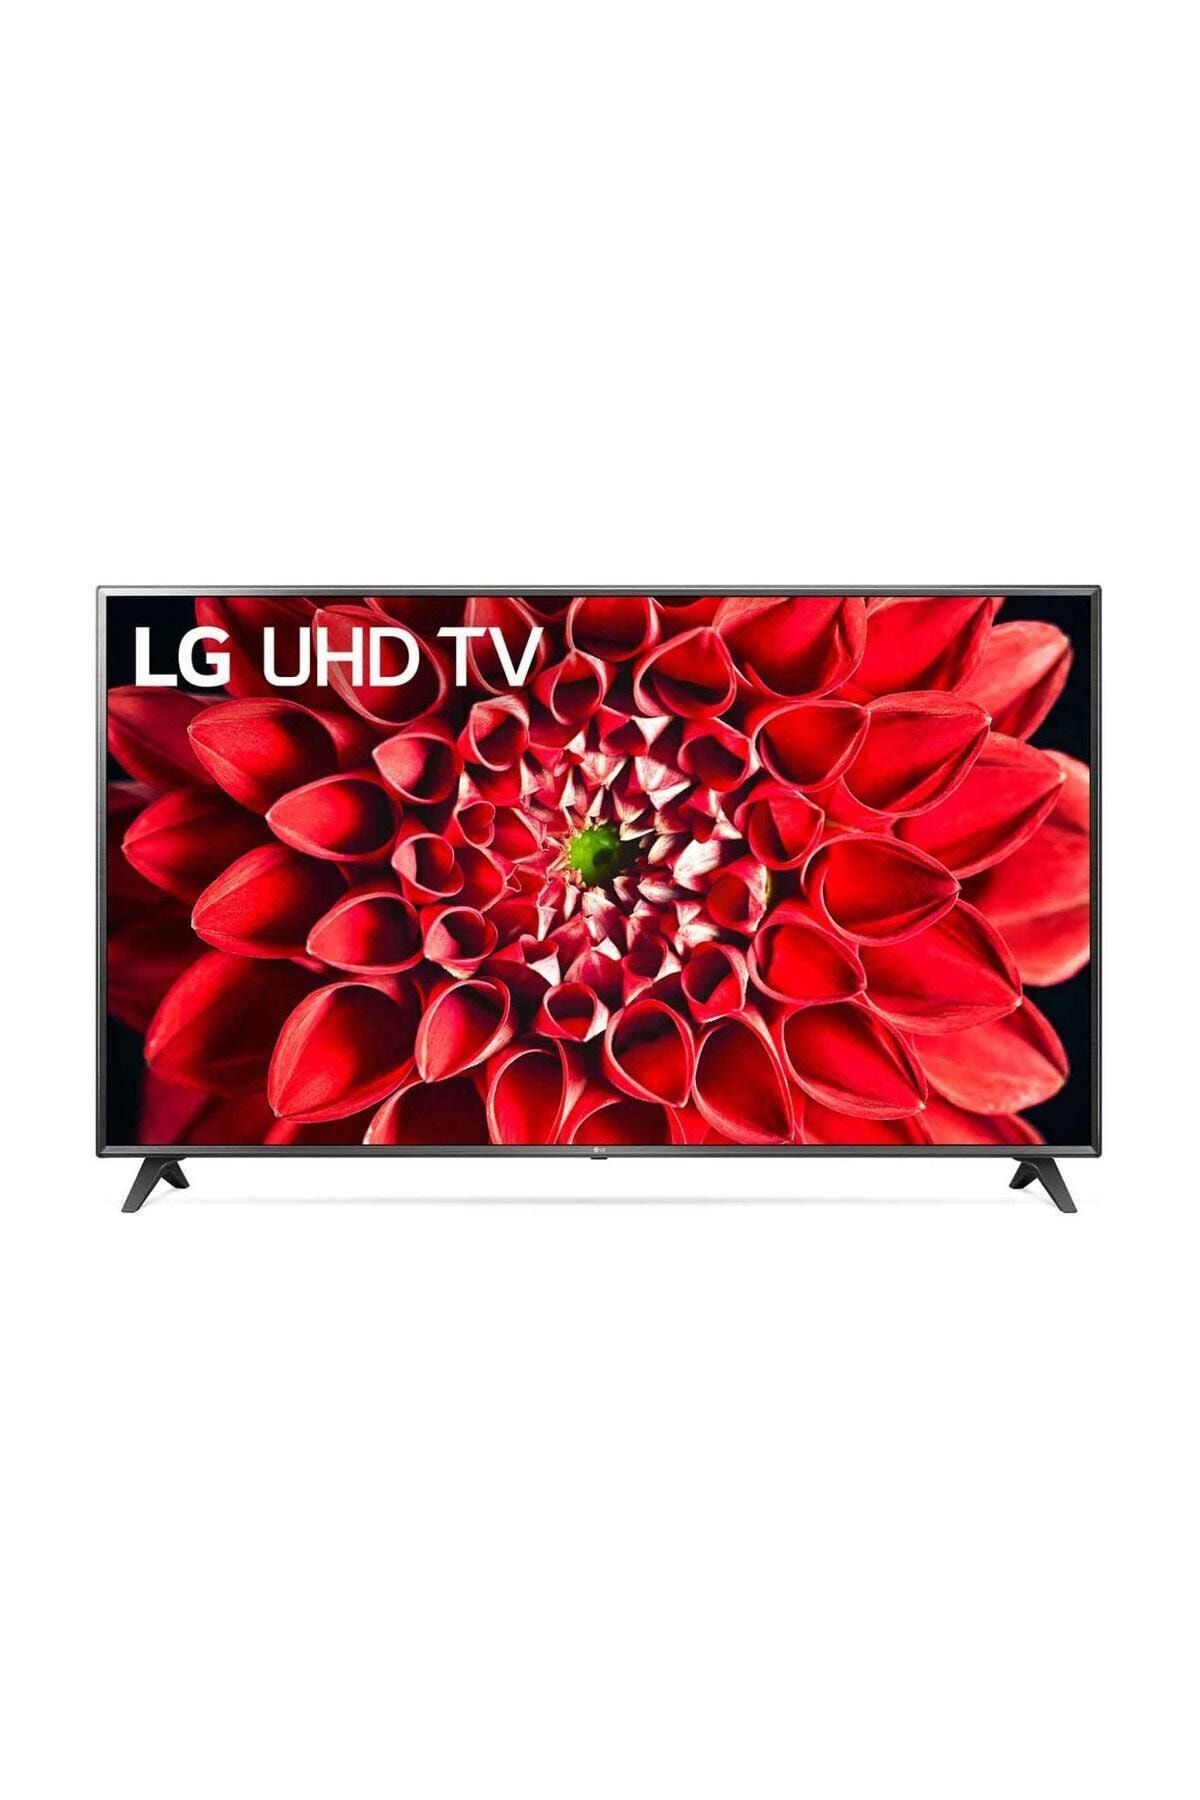 LG 55UN71006 55" 139 Ekran Uydu Alıcılı 4K Ultra HD Smart LED TV